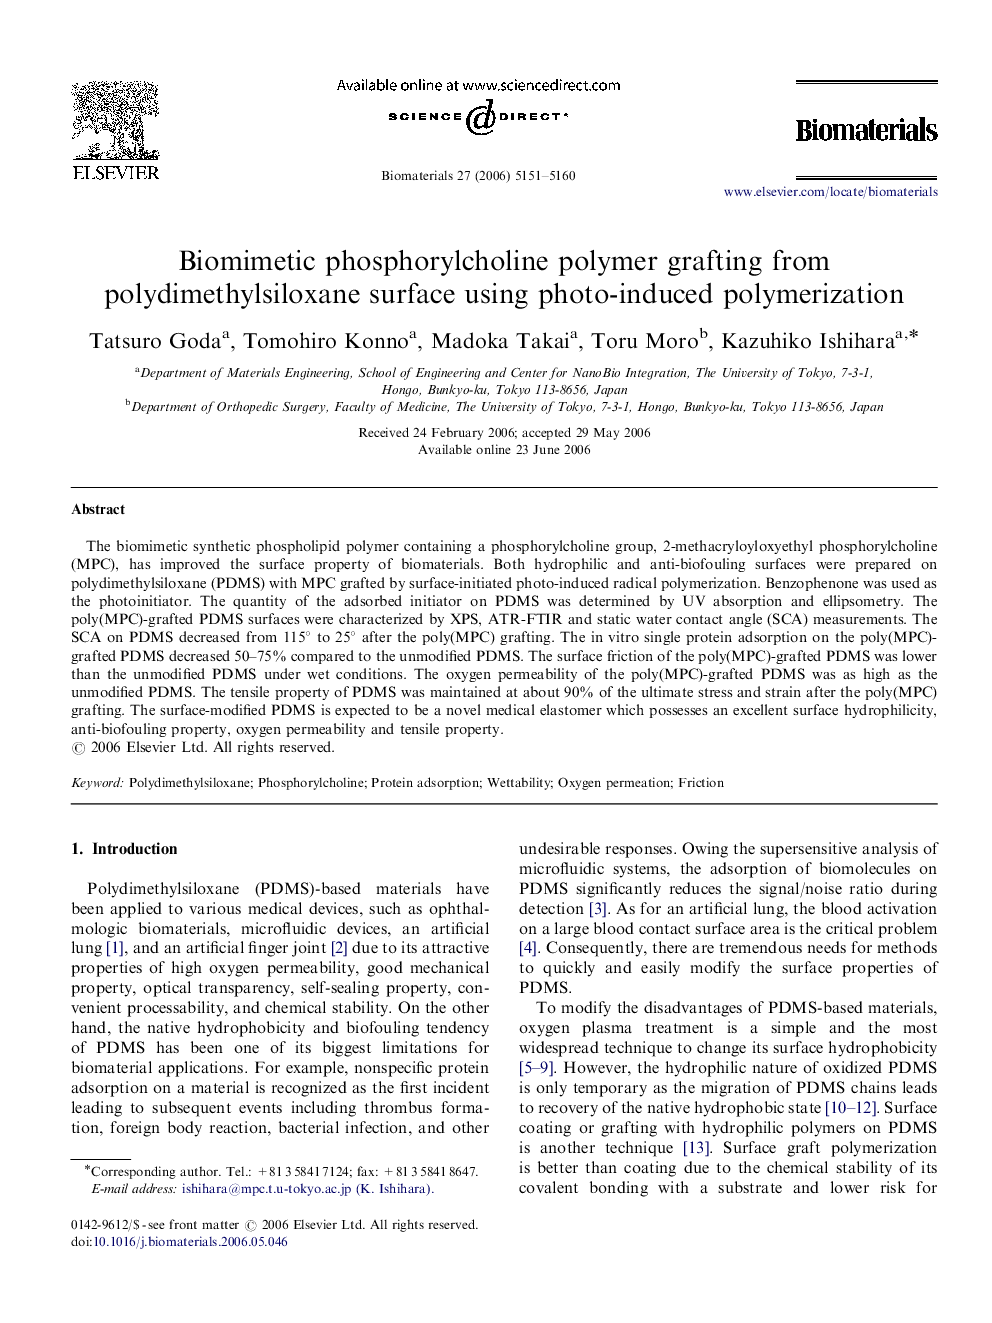 Biomimetic phosphorylcholine polymer grafting from polydimethylsiloxane surface using photo-induced polymerization